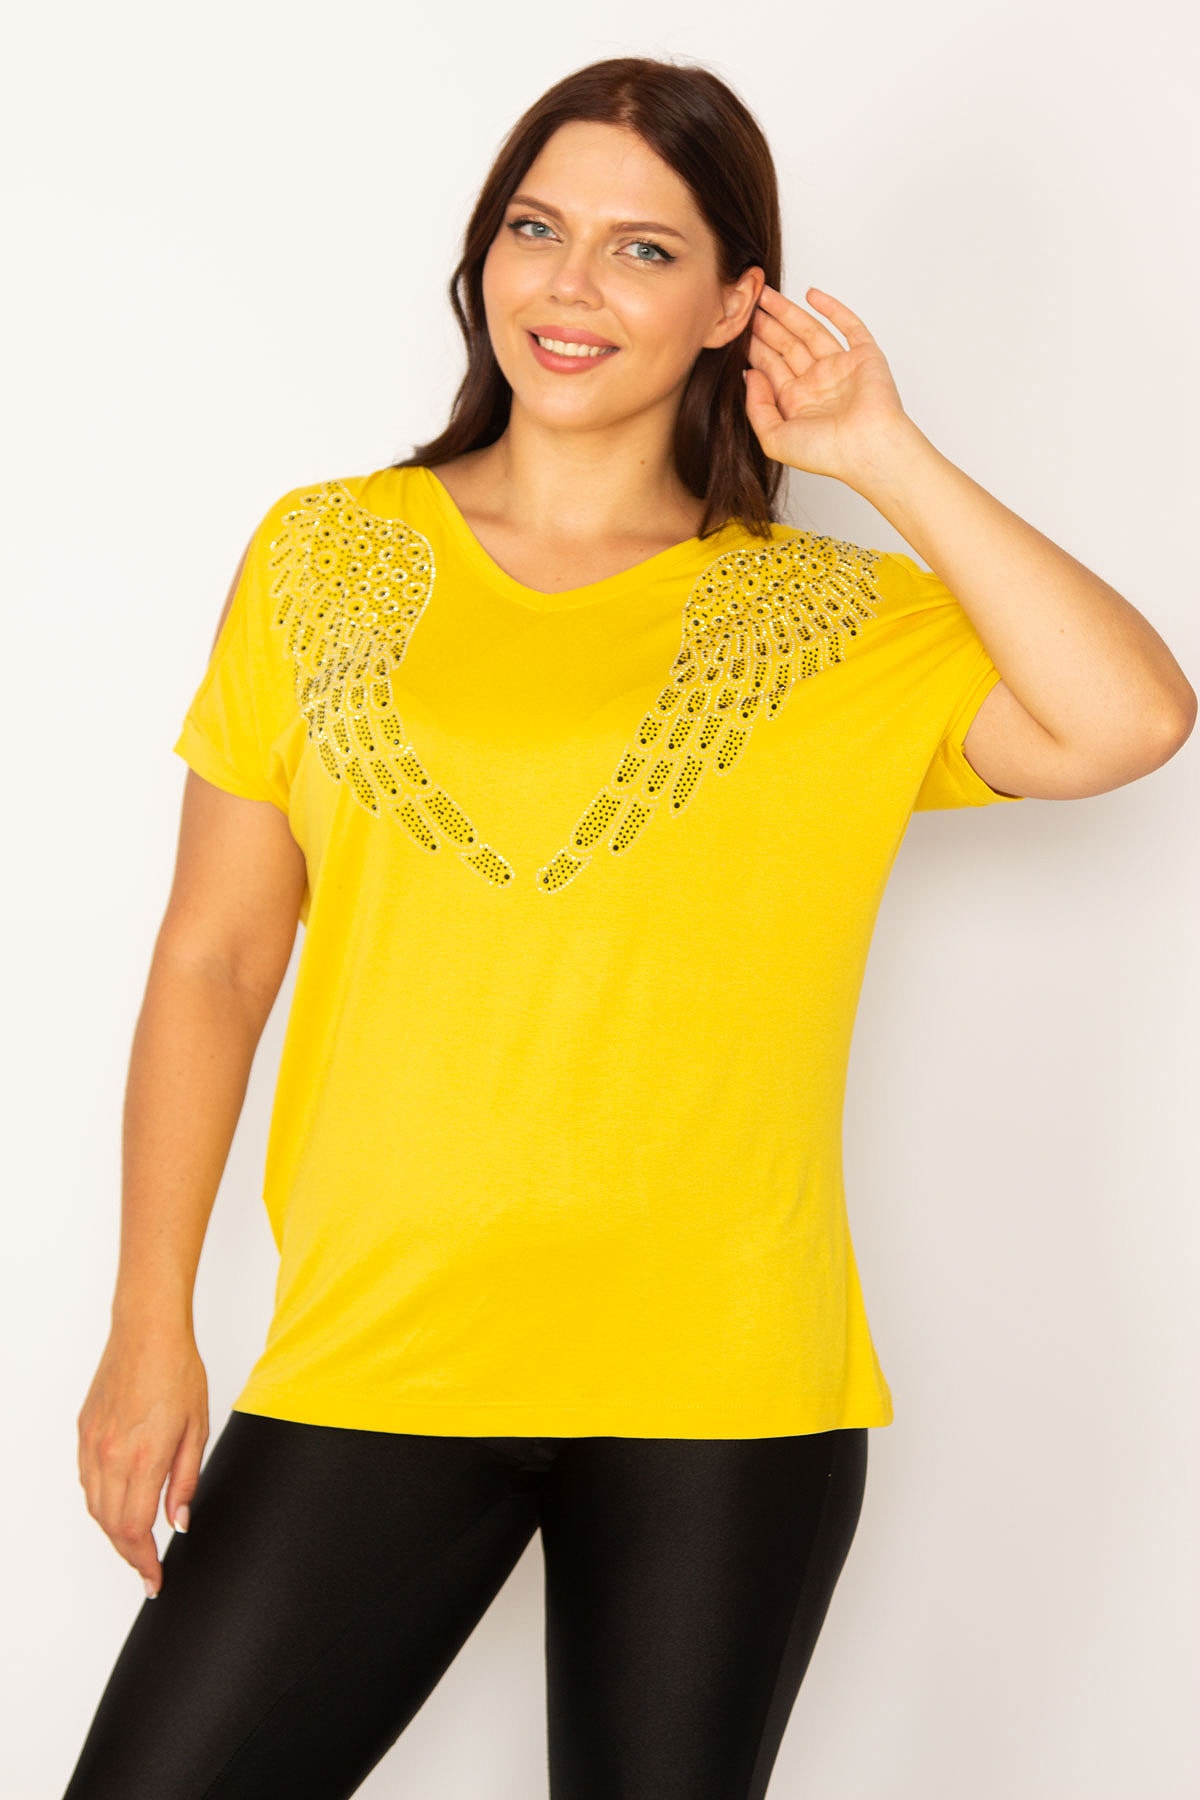 Женская блузка большого размера с желтыми плечами и декольте с камнями 65n34184 Şans, желтый женская желтая блузка большого размера с боковым разрезом спереди şans желтый